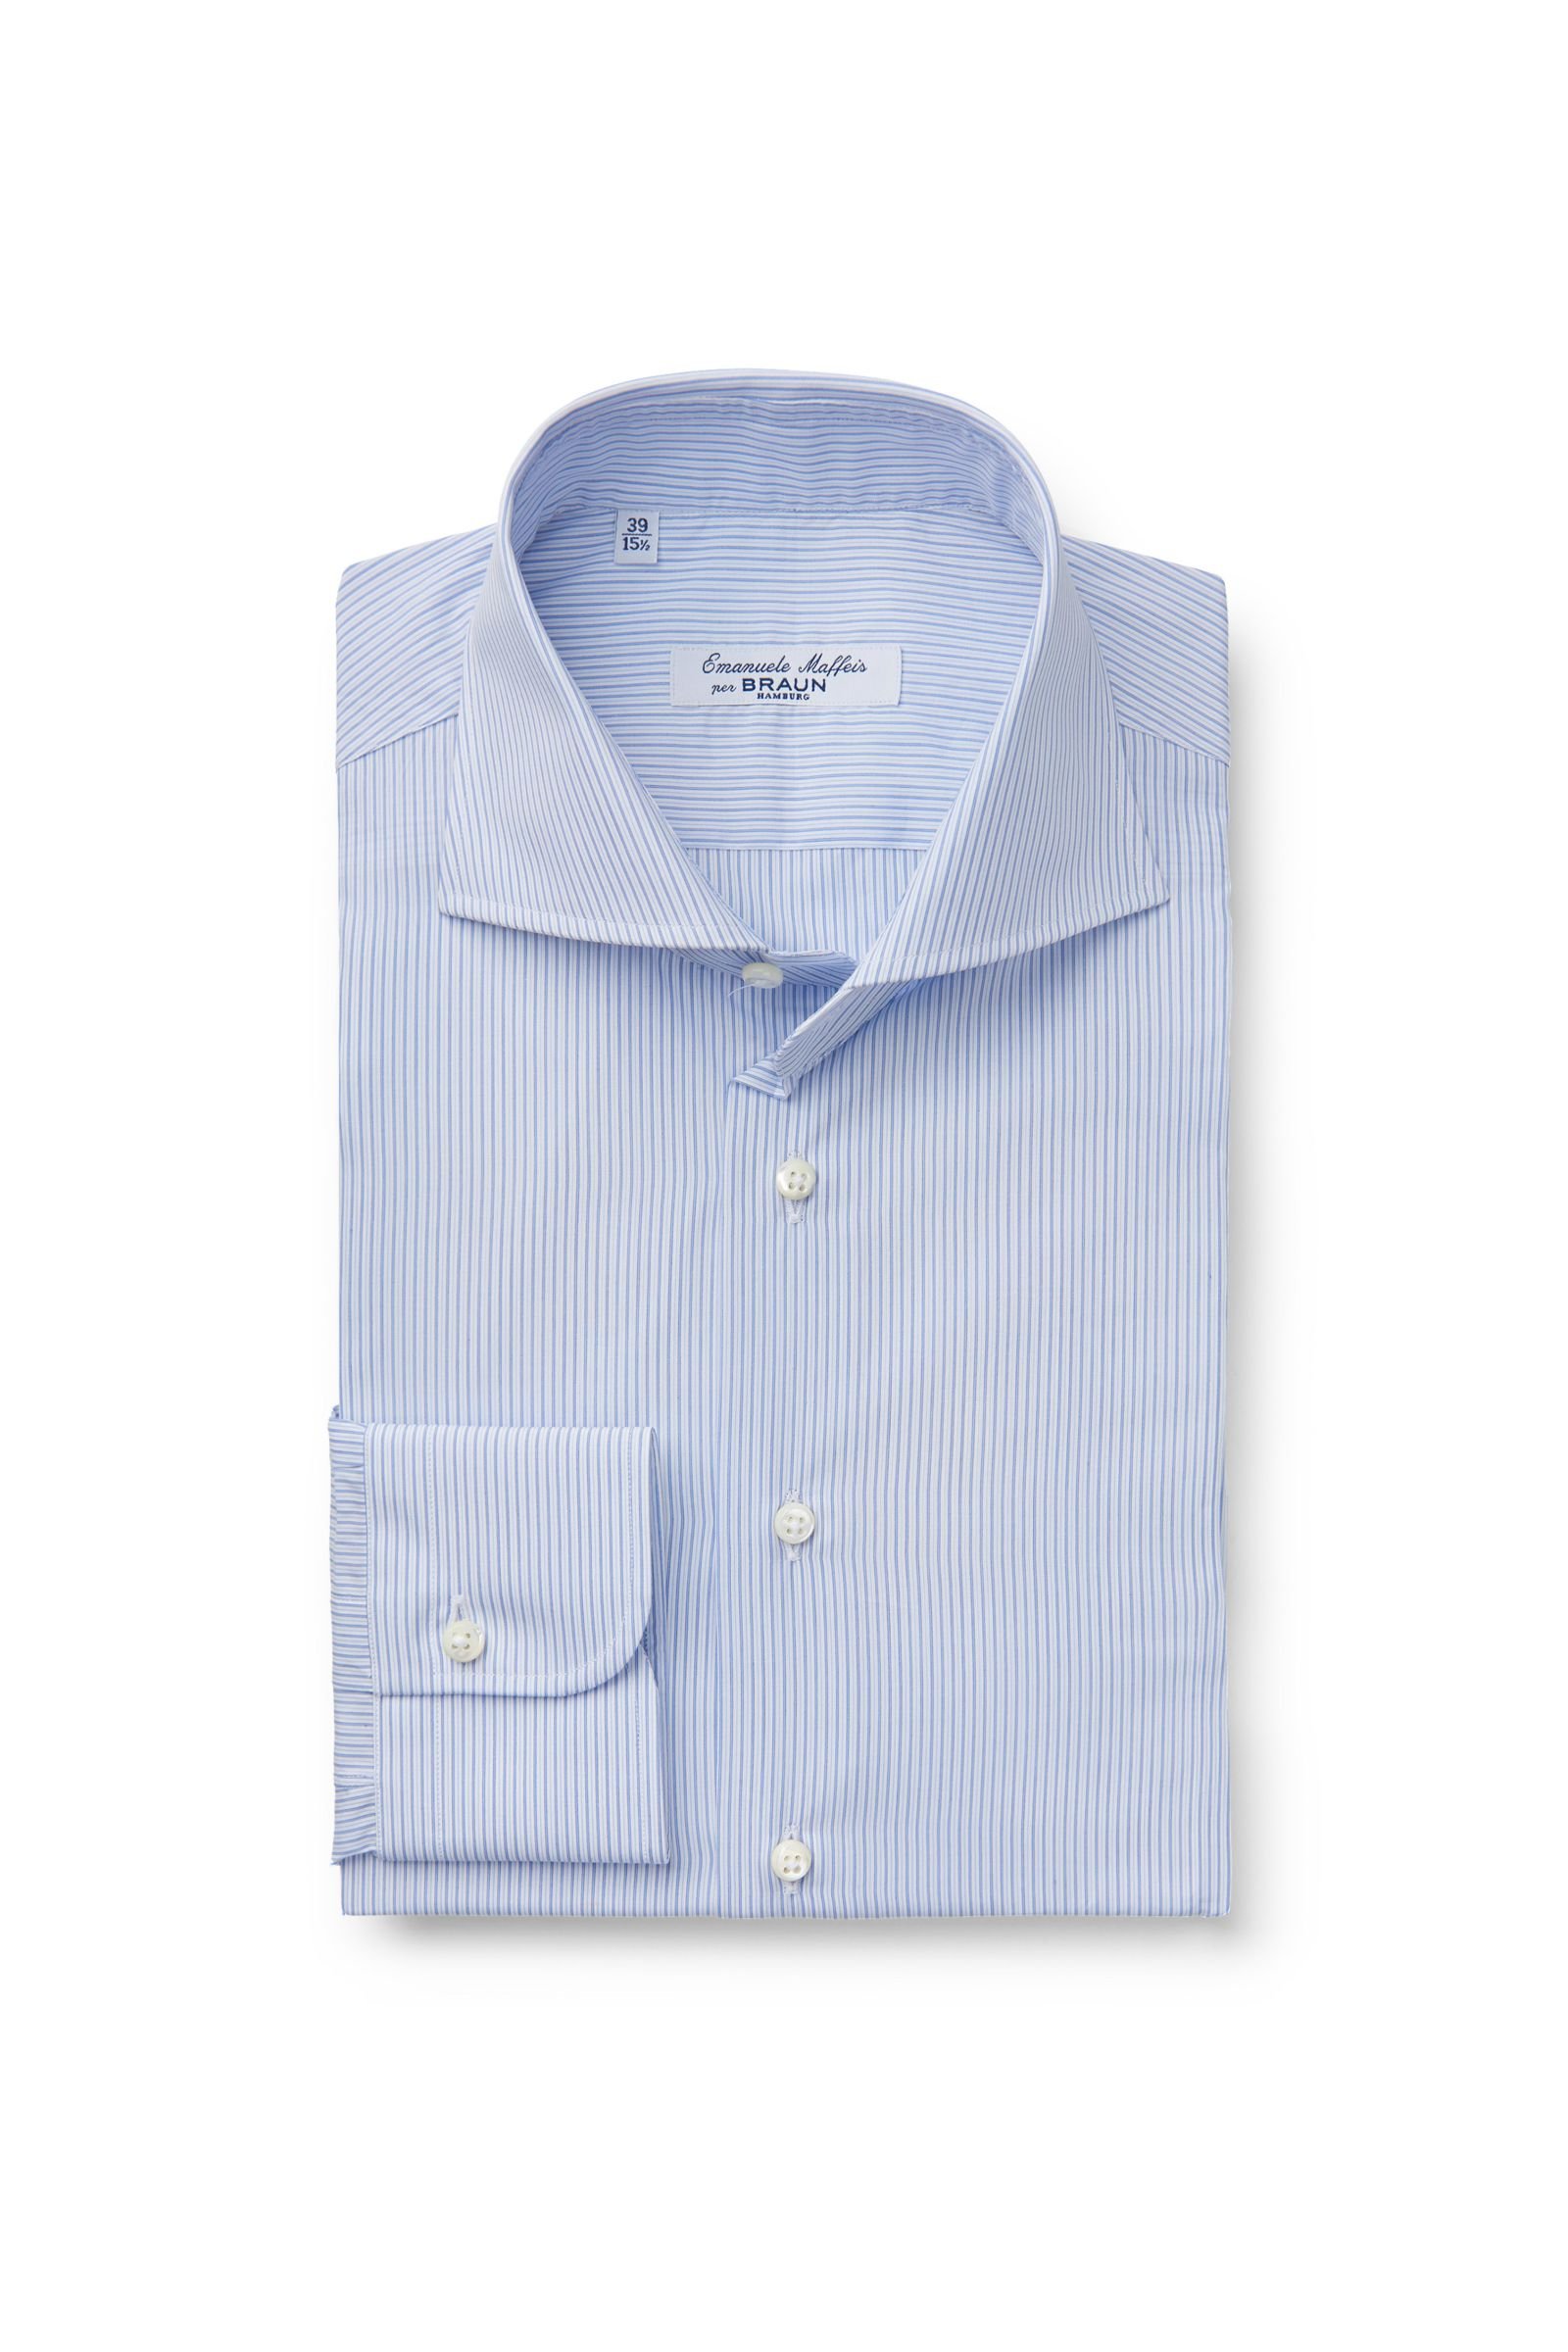 Business shirt 'Oscar' shark collar blue striped